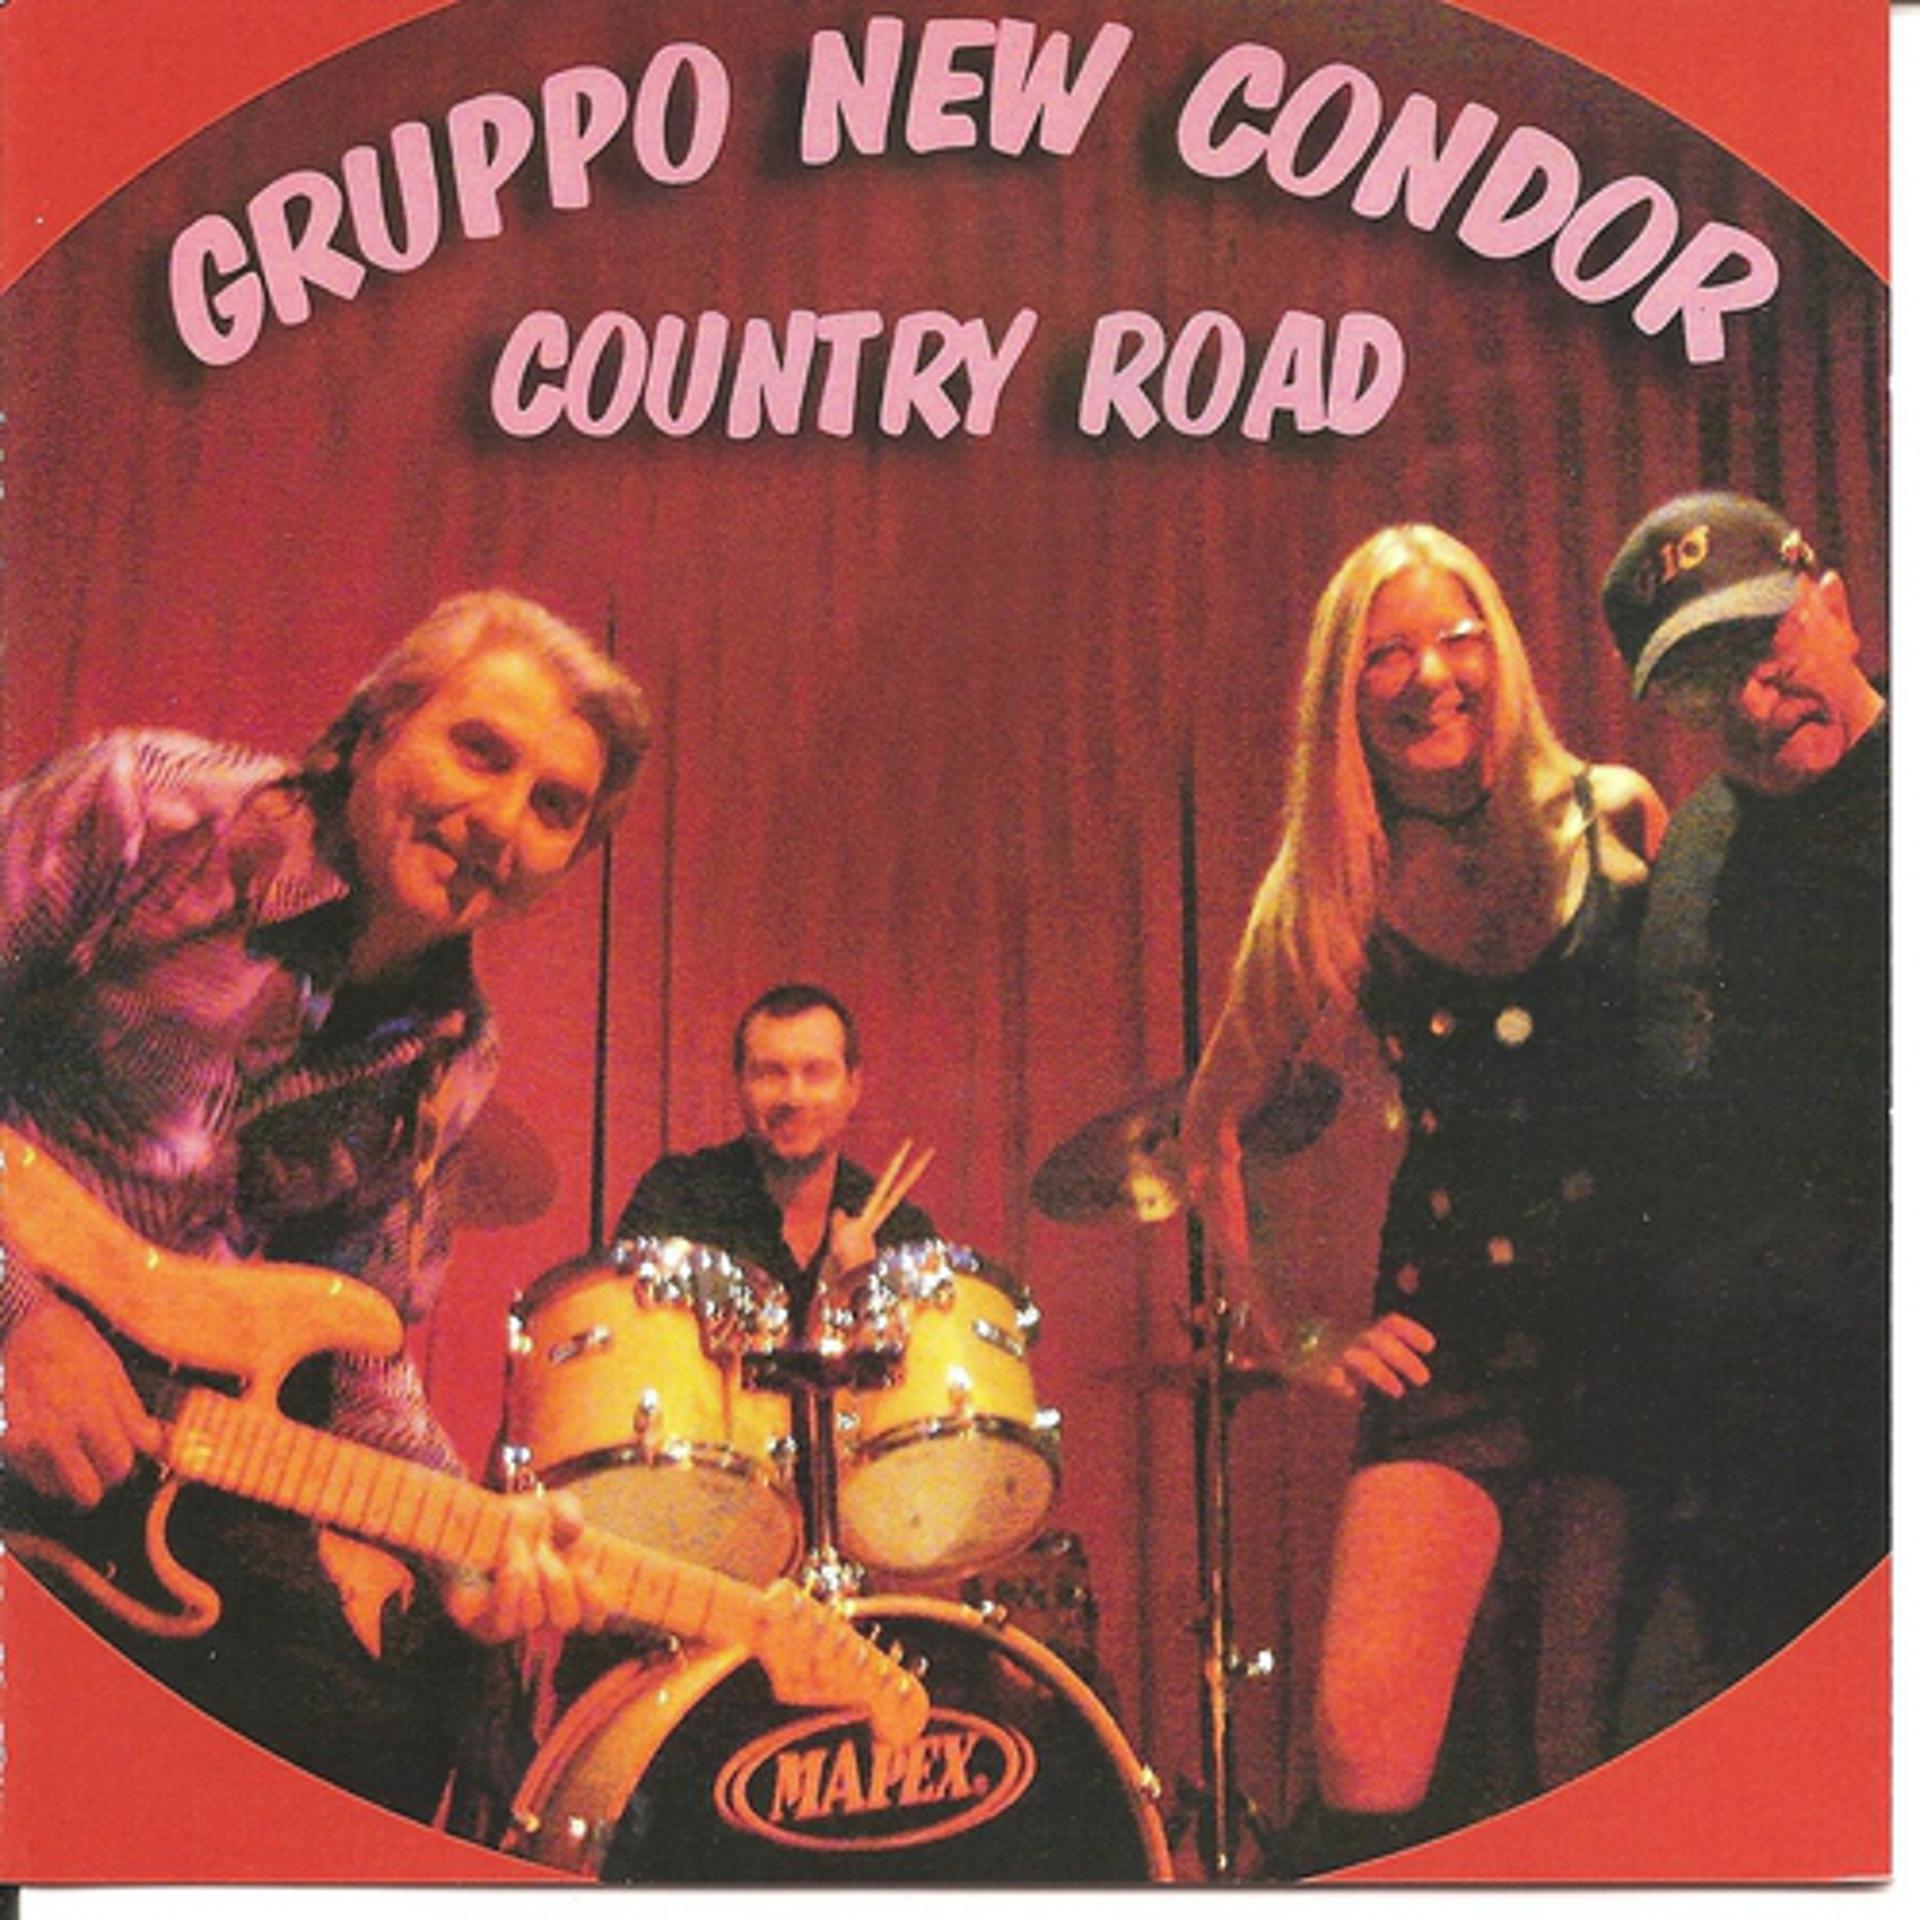 Постер к треку Cicci Guitar Condor, Gruppo New Condor - Tornerò